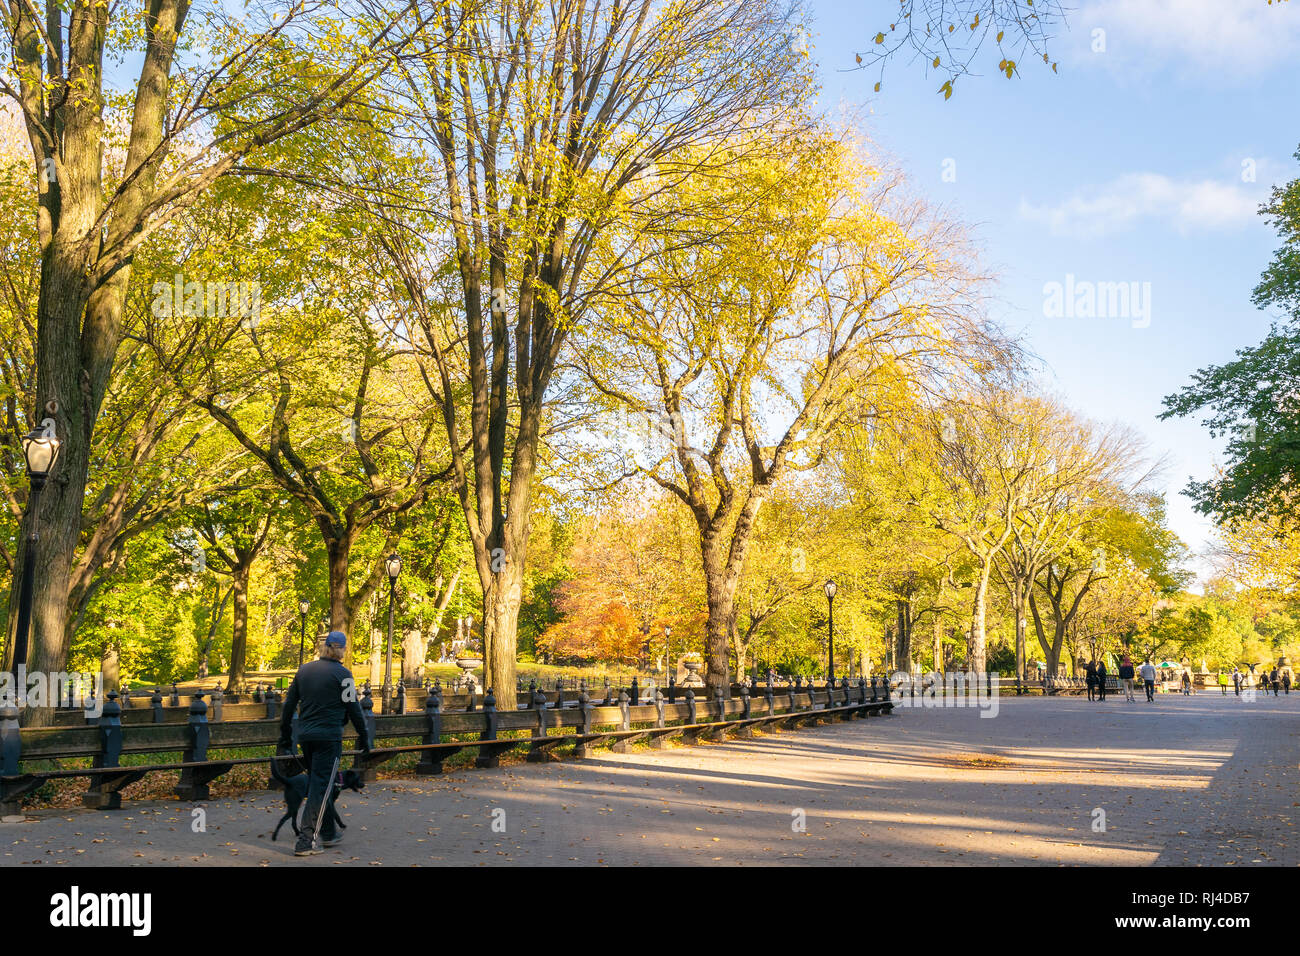 El paisaje y la gente ejercicio/correr/caminar o pasear por el Central Park de Nueva York durante el otoño colorido/temporada de otoño Foto de stock